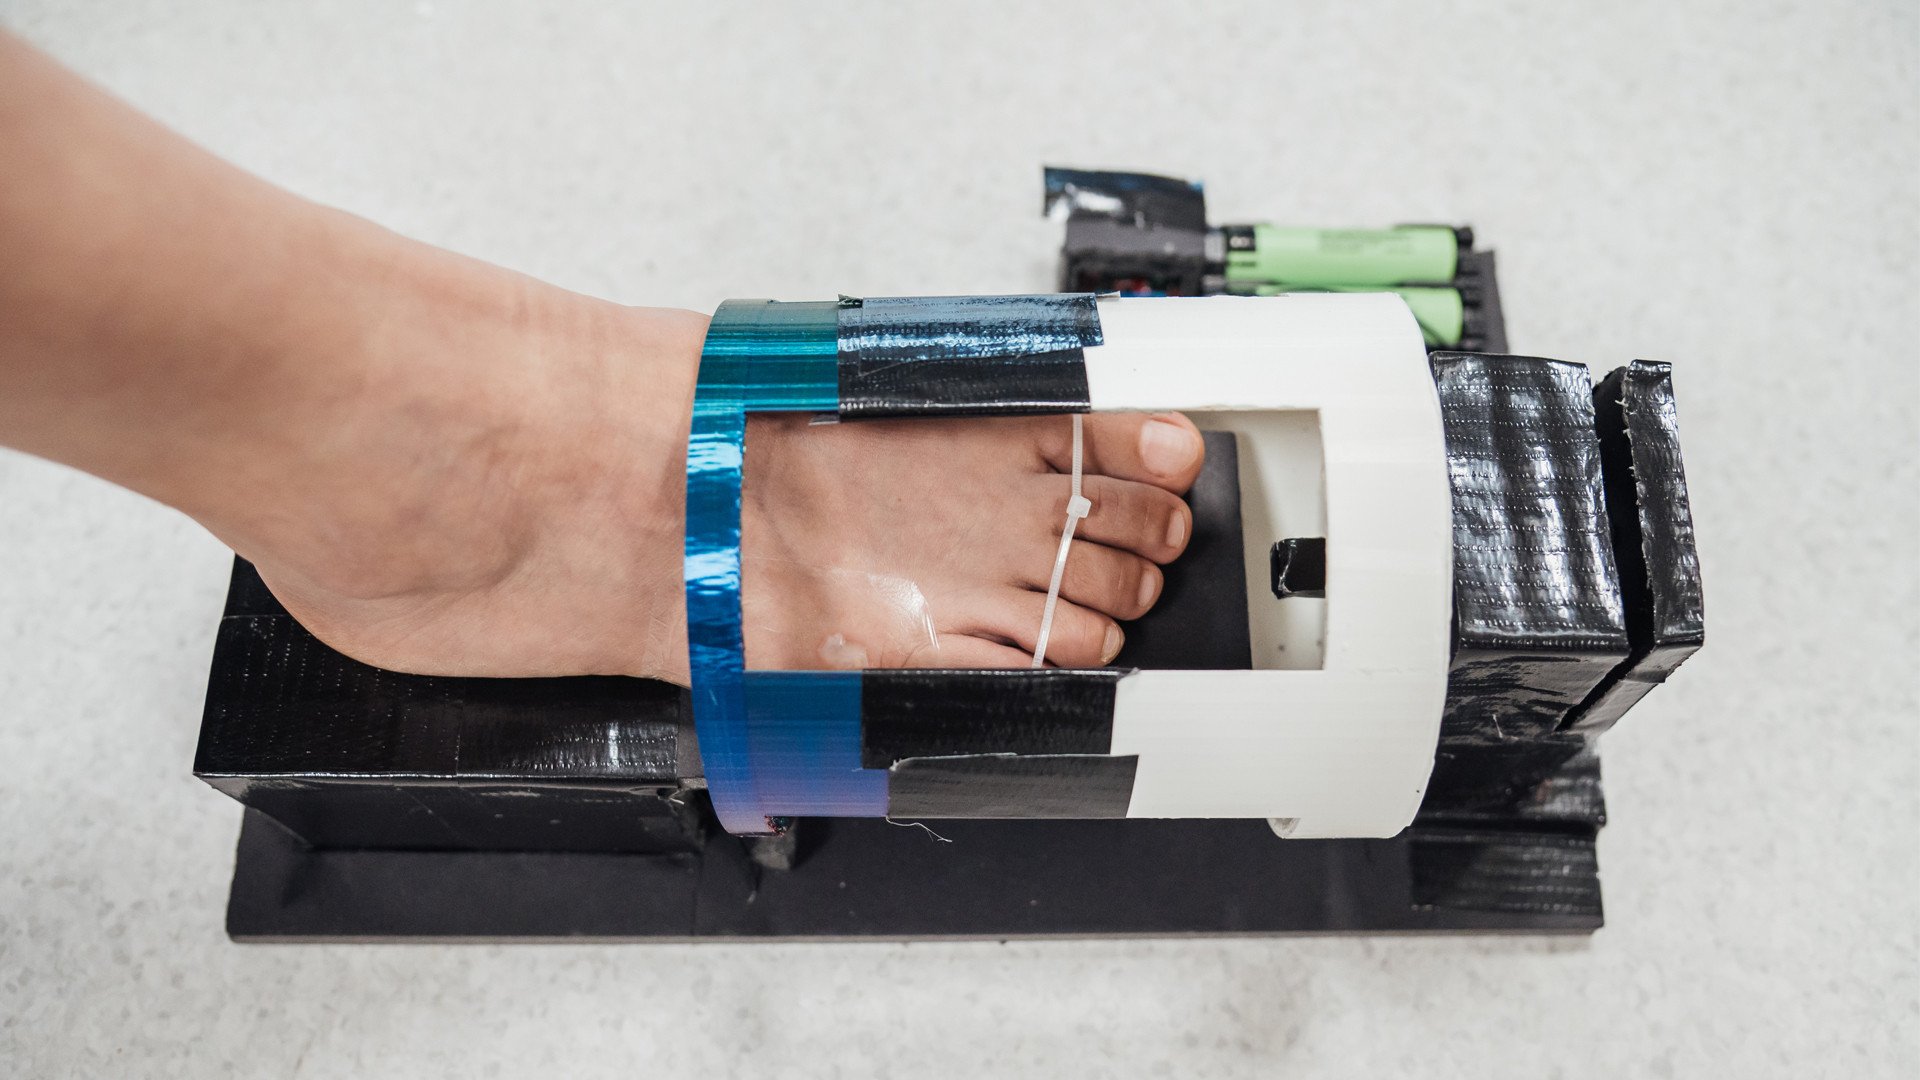 O curativo com hidrogel magnético é colocado sobre a ferida e um dispositivo externo é utilizado para acelerar o processo de cicatrização. (Fonte: NUS/Reprodução)